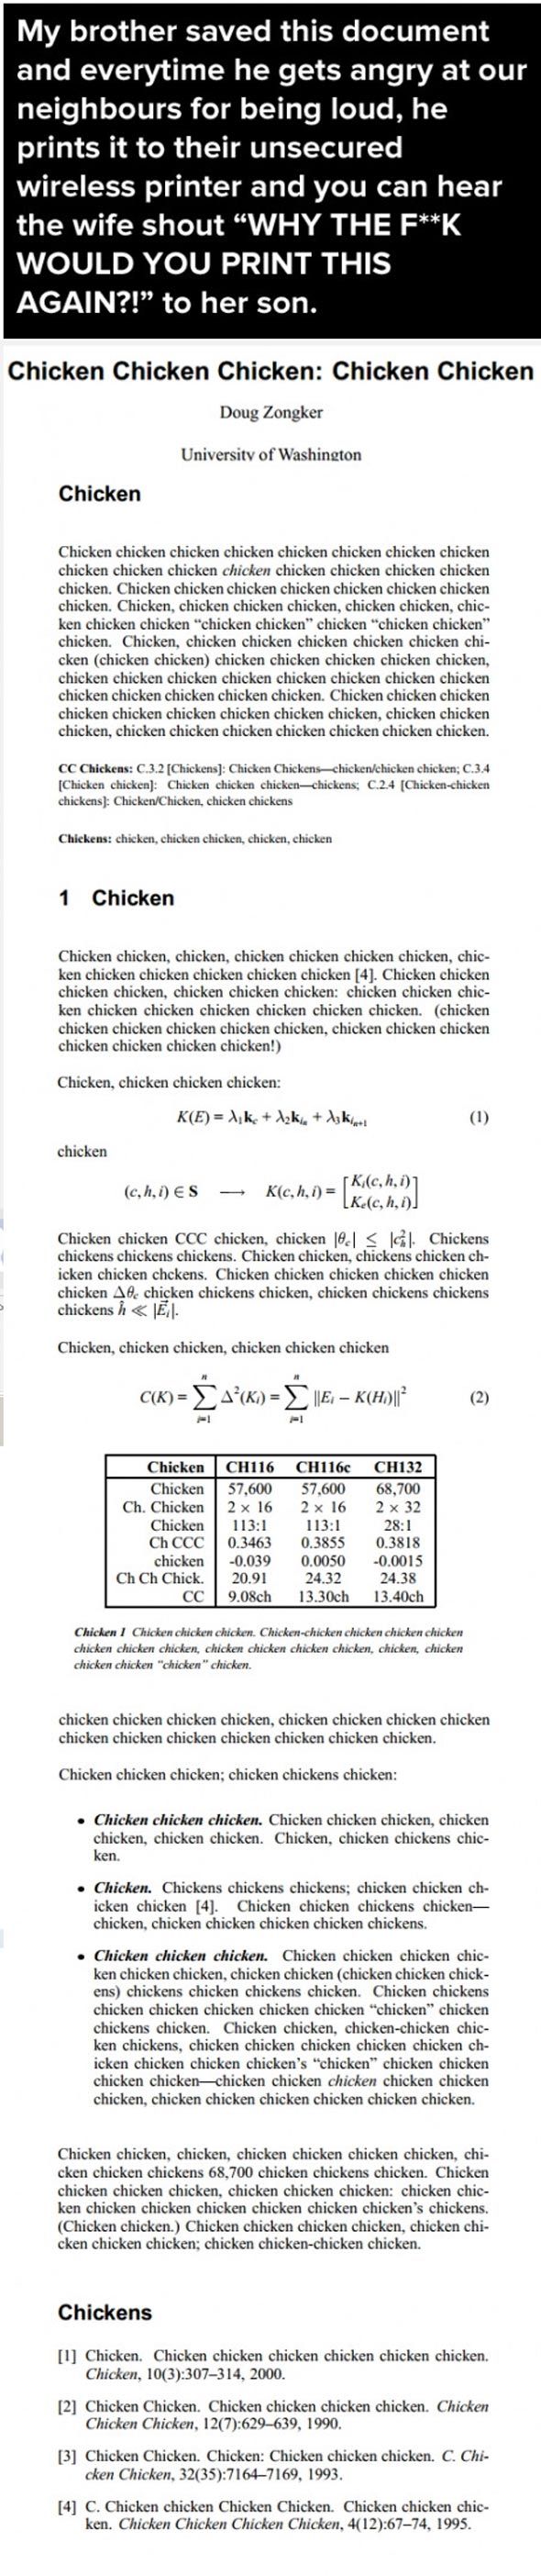 chicken_chicken